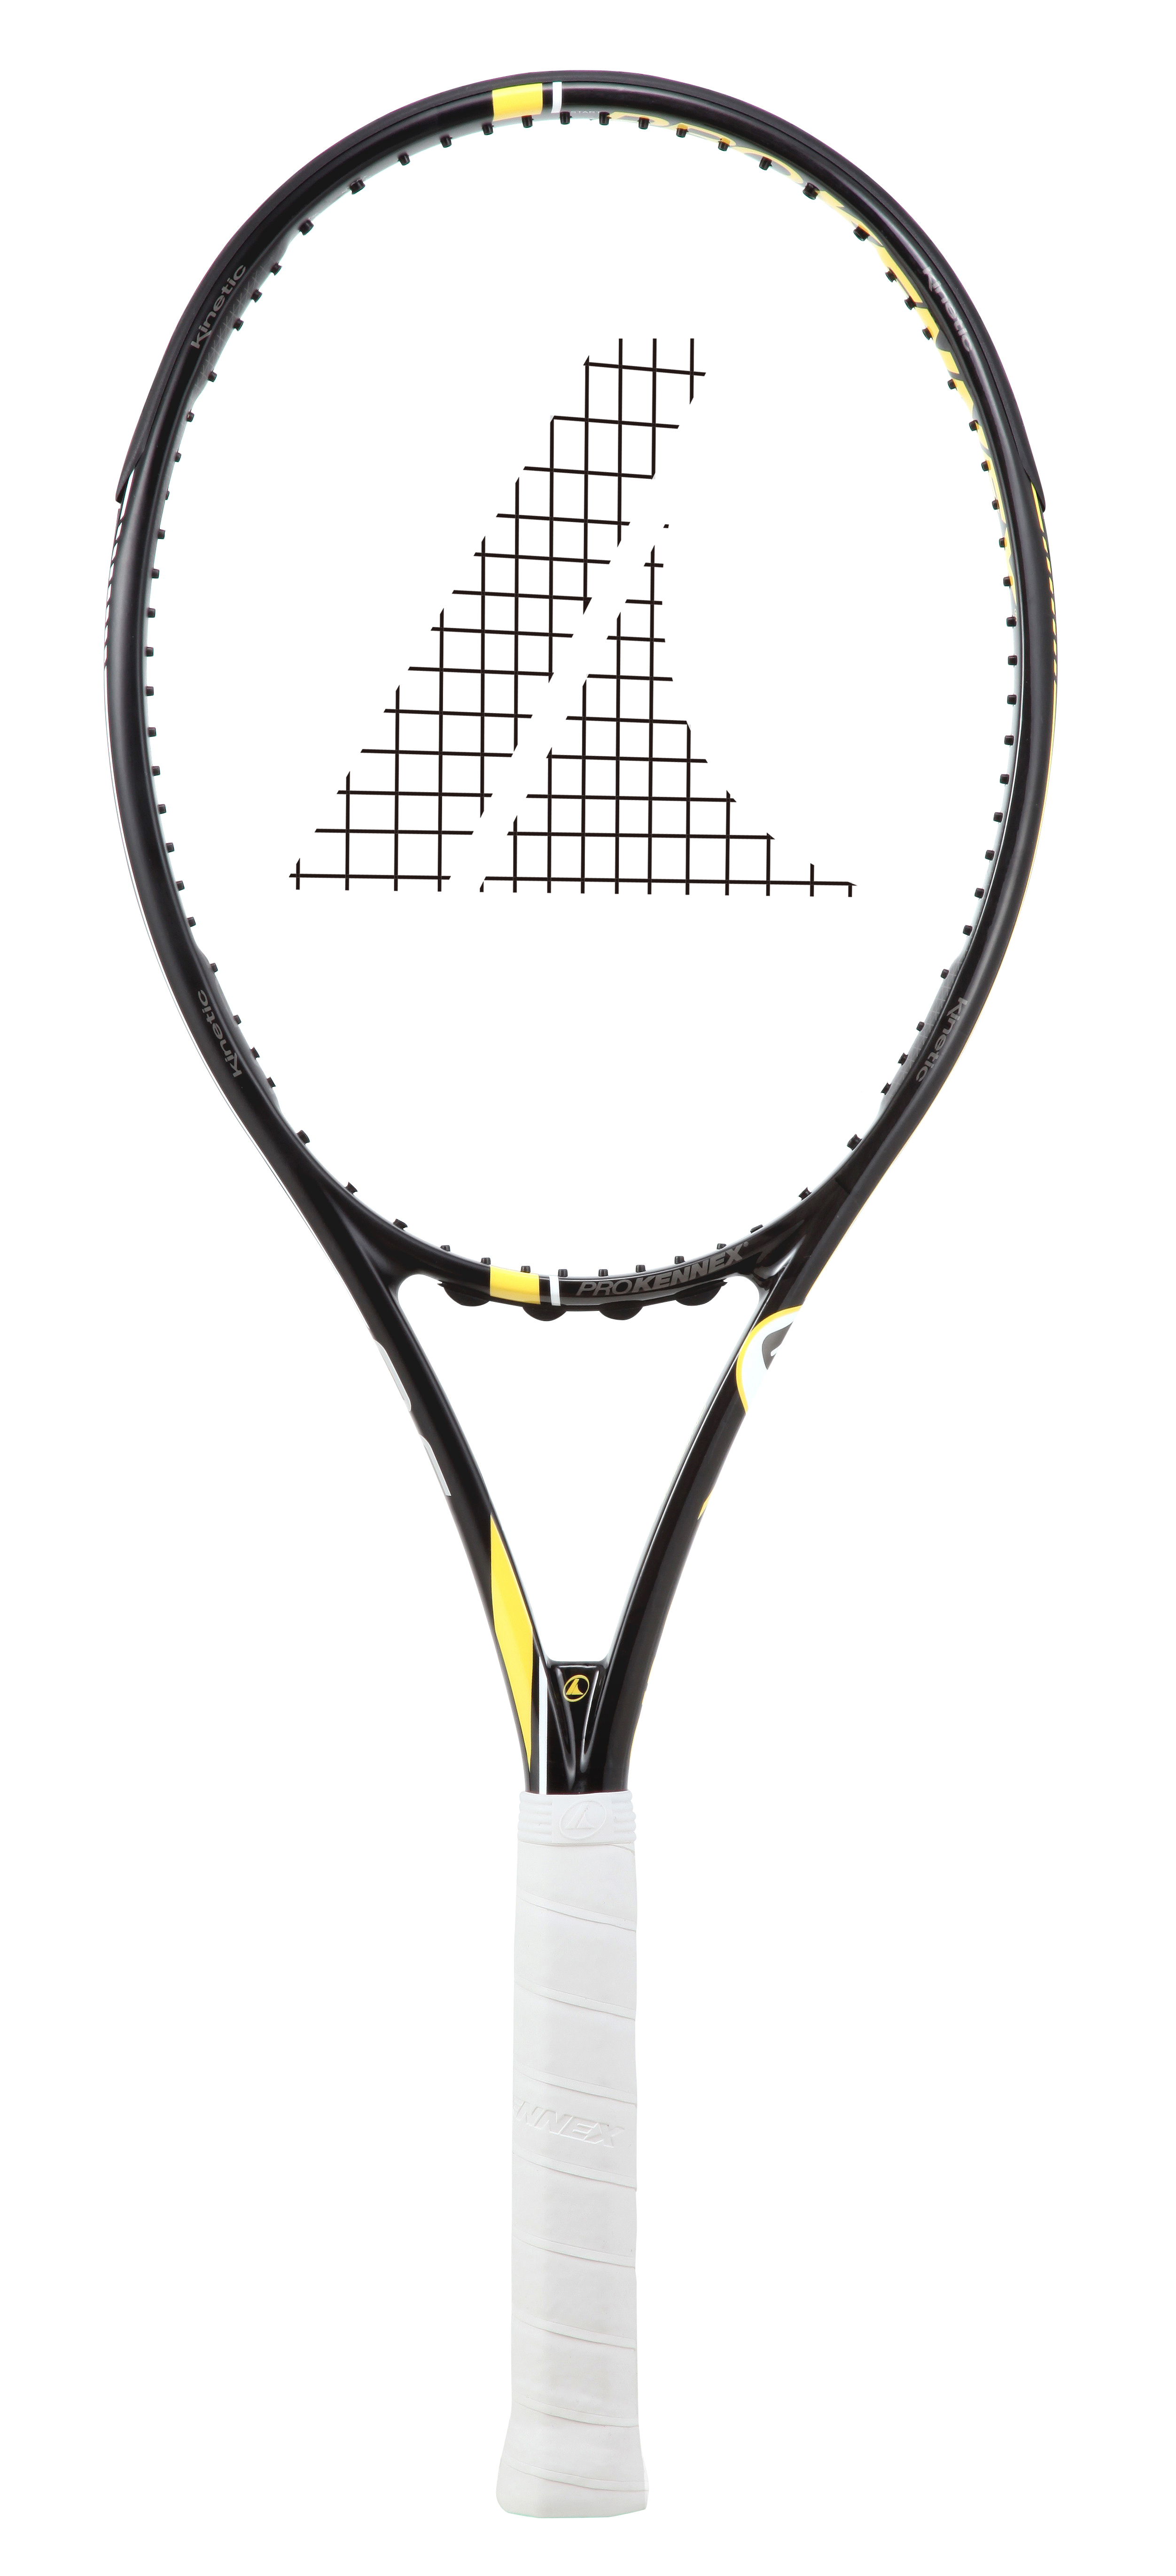 テニスラケット プロケネックス キネティック5 280 バージョン12 (G2)PROKENNEX Ki5 280 ver.12